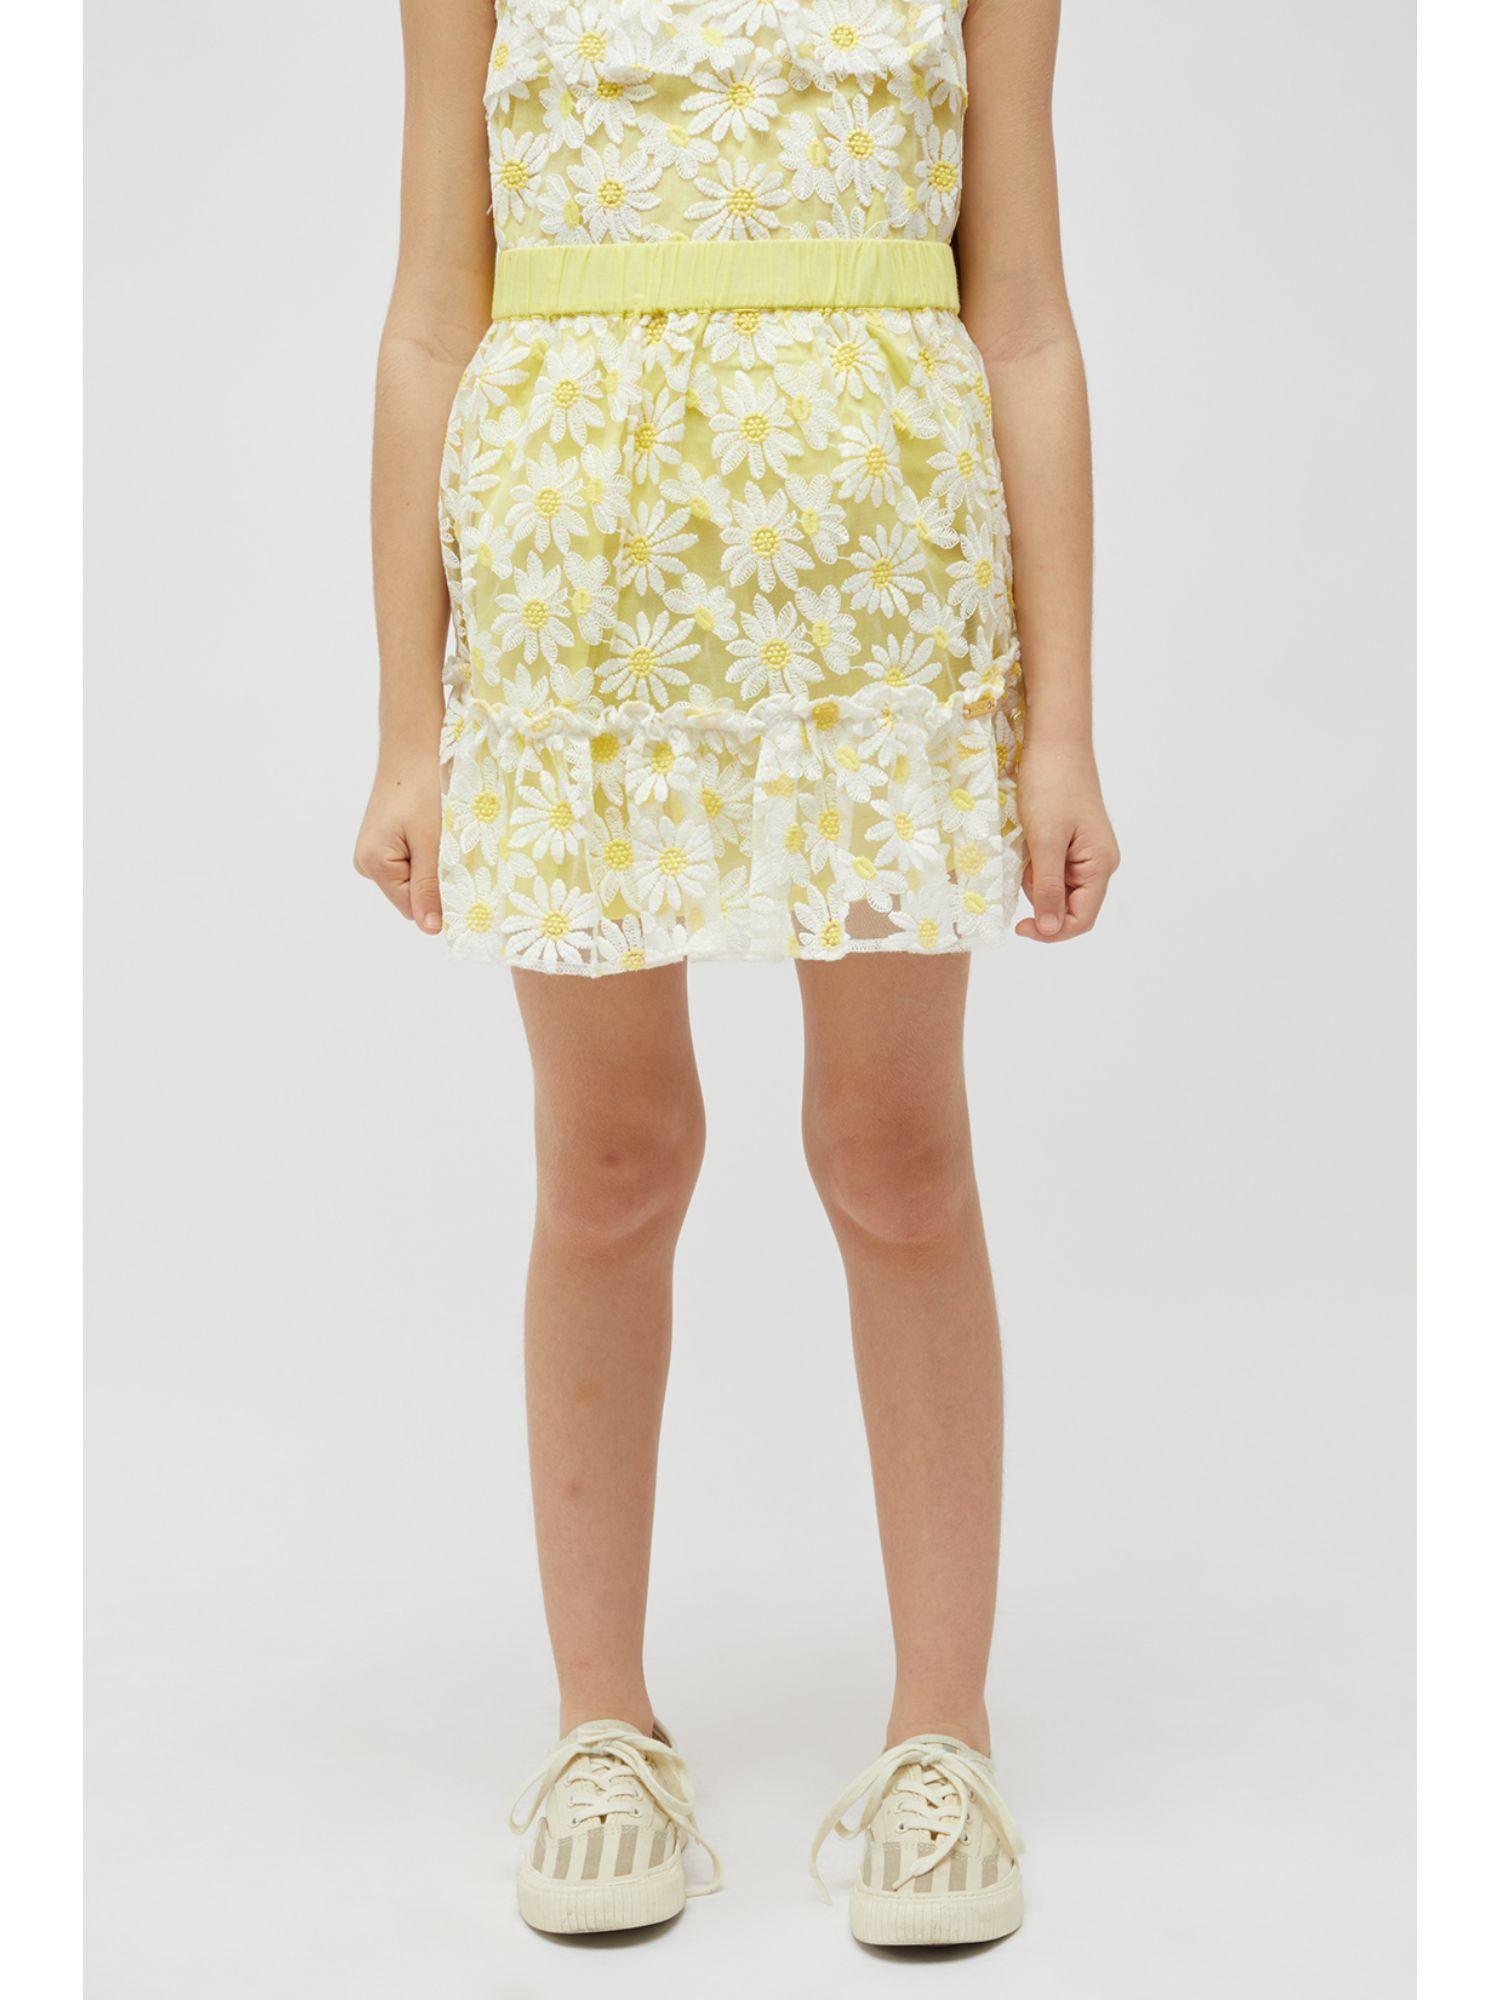 yellow ruffles skirt